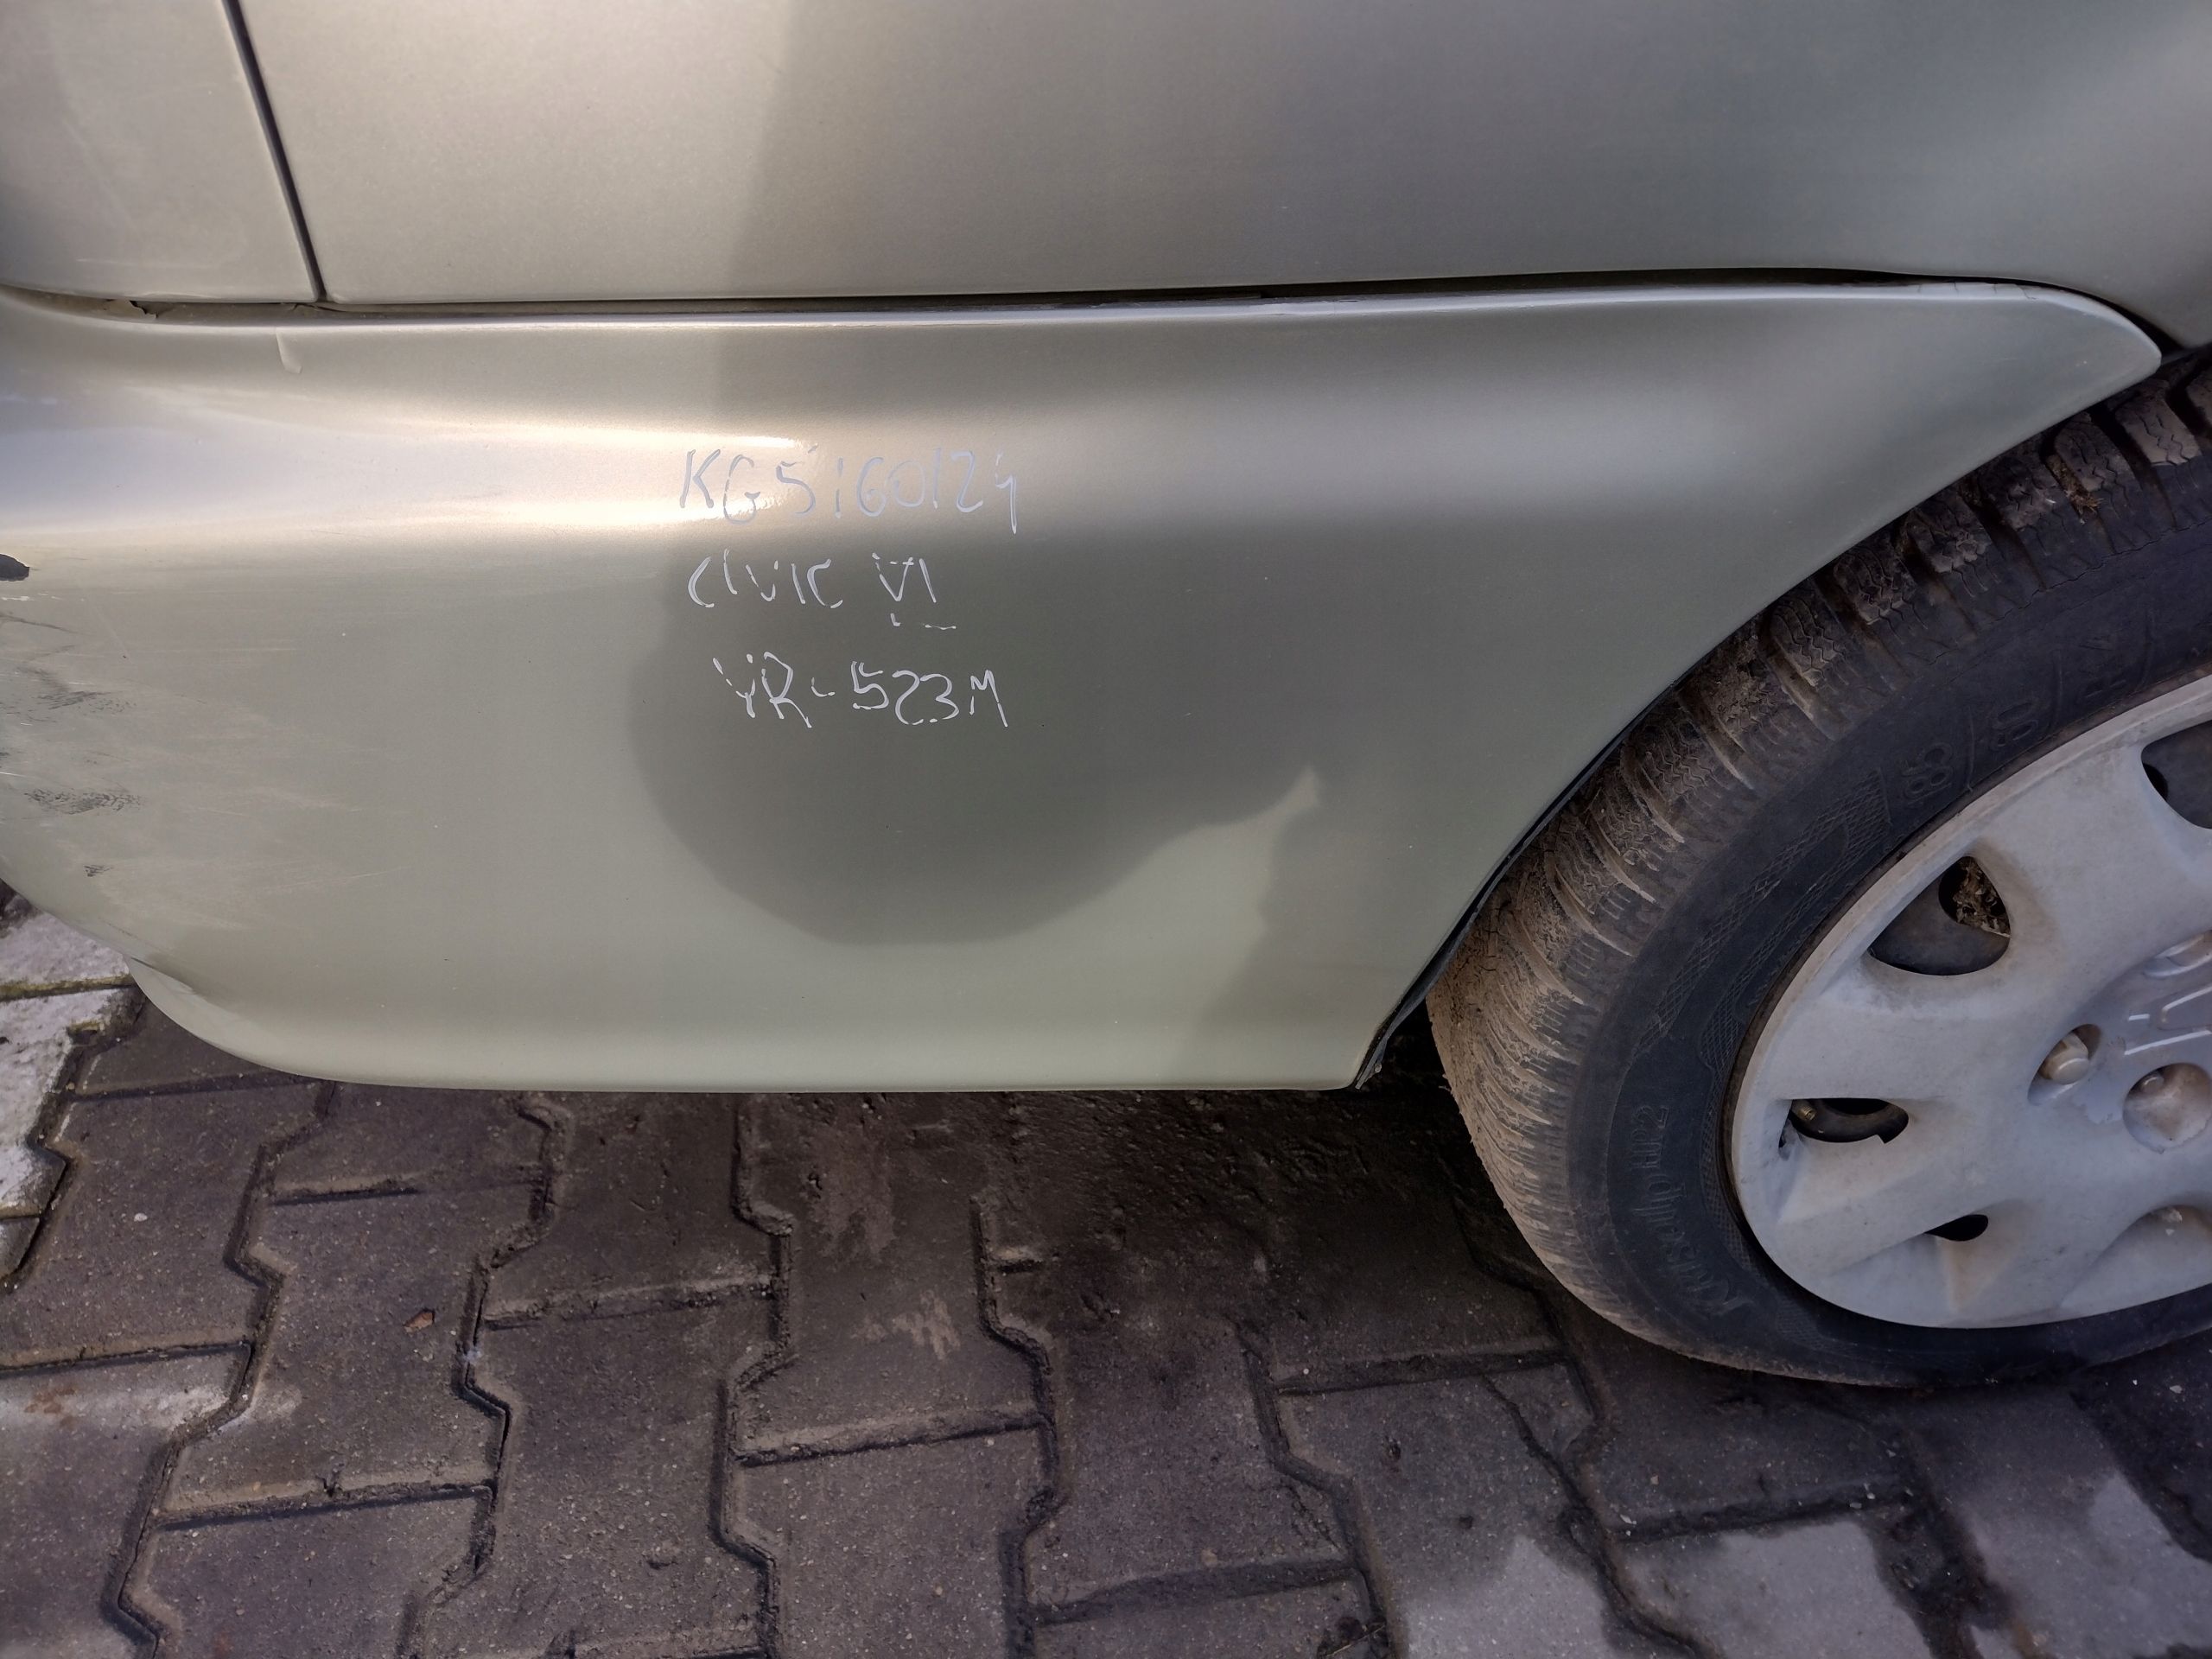 Zderzak tylny Honda Civic Vi sedan 5d k: Yr-523m